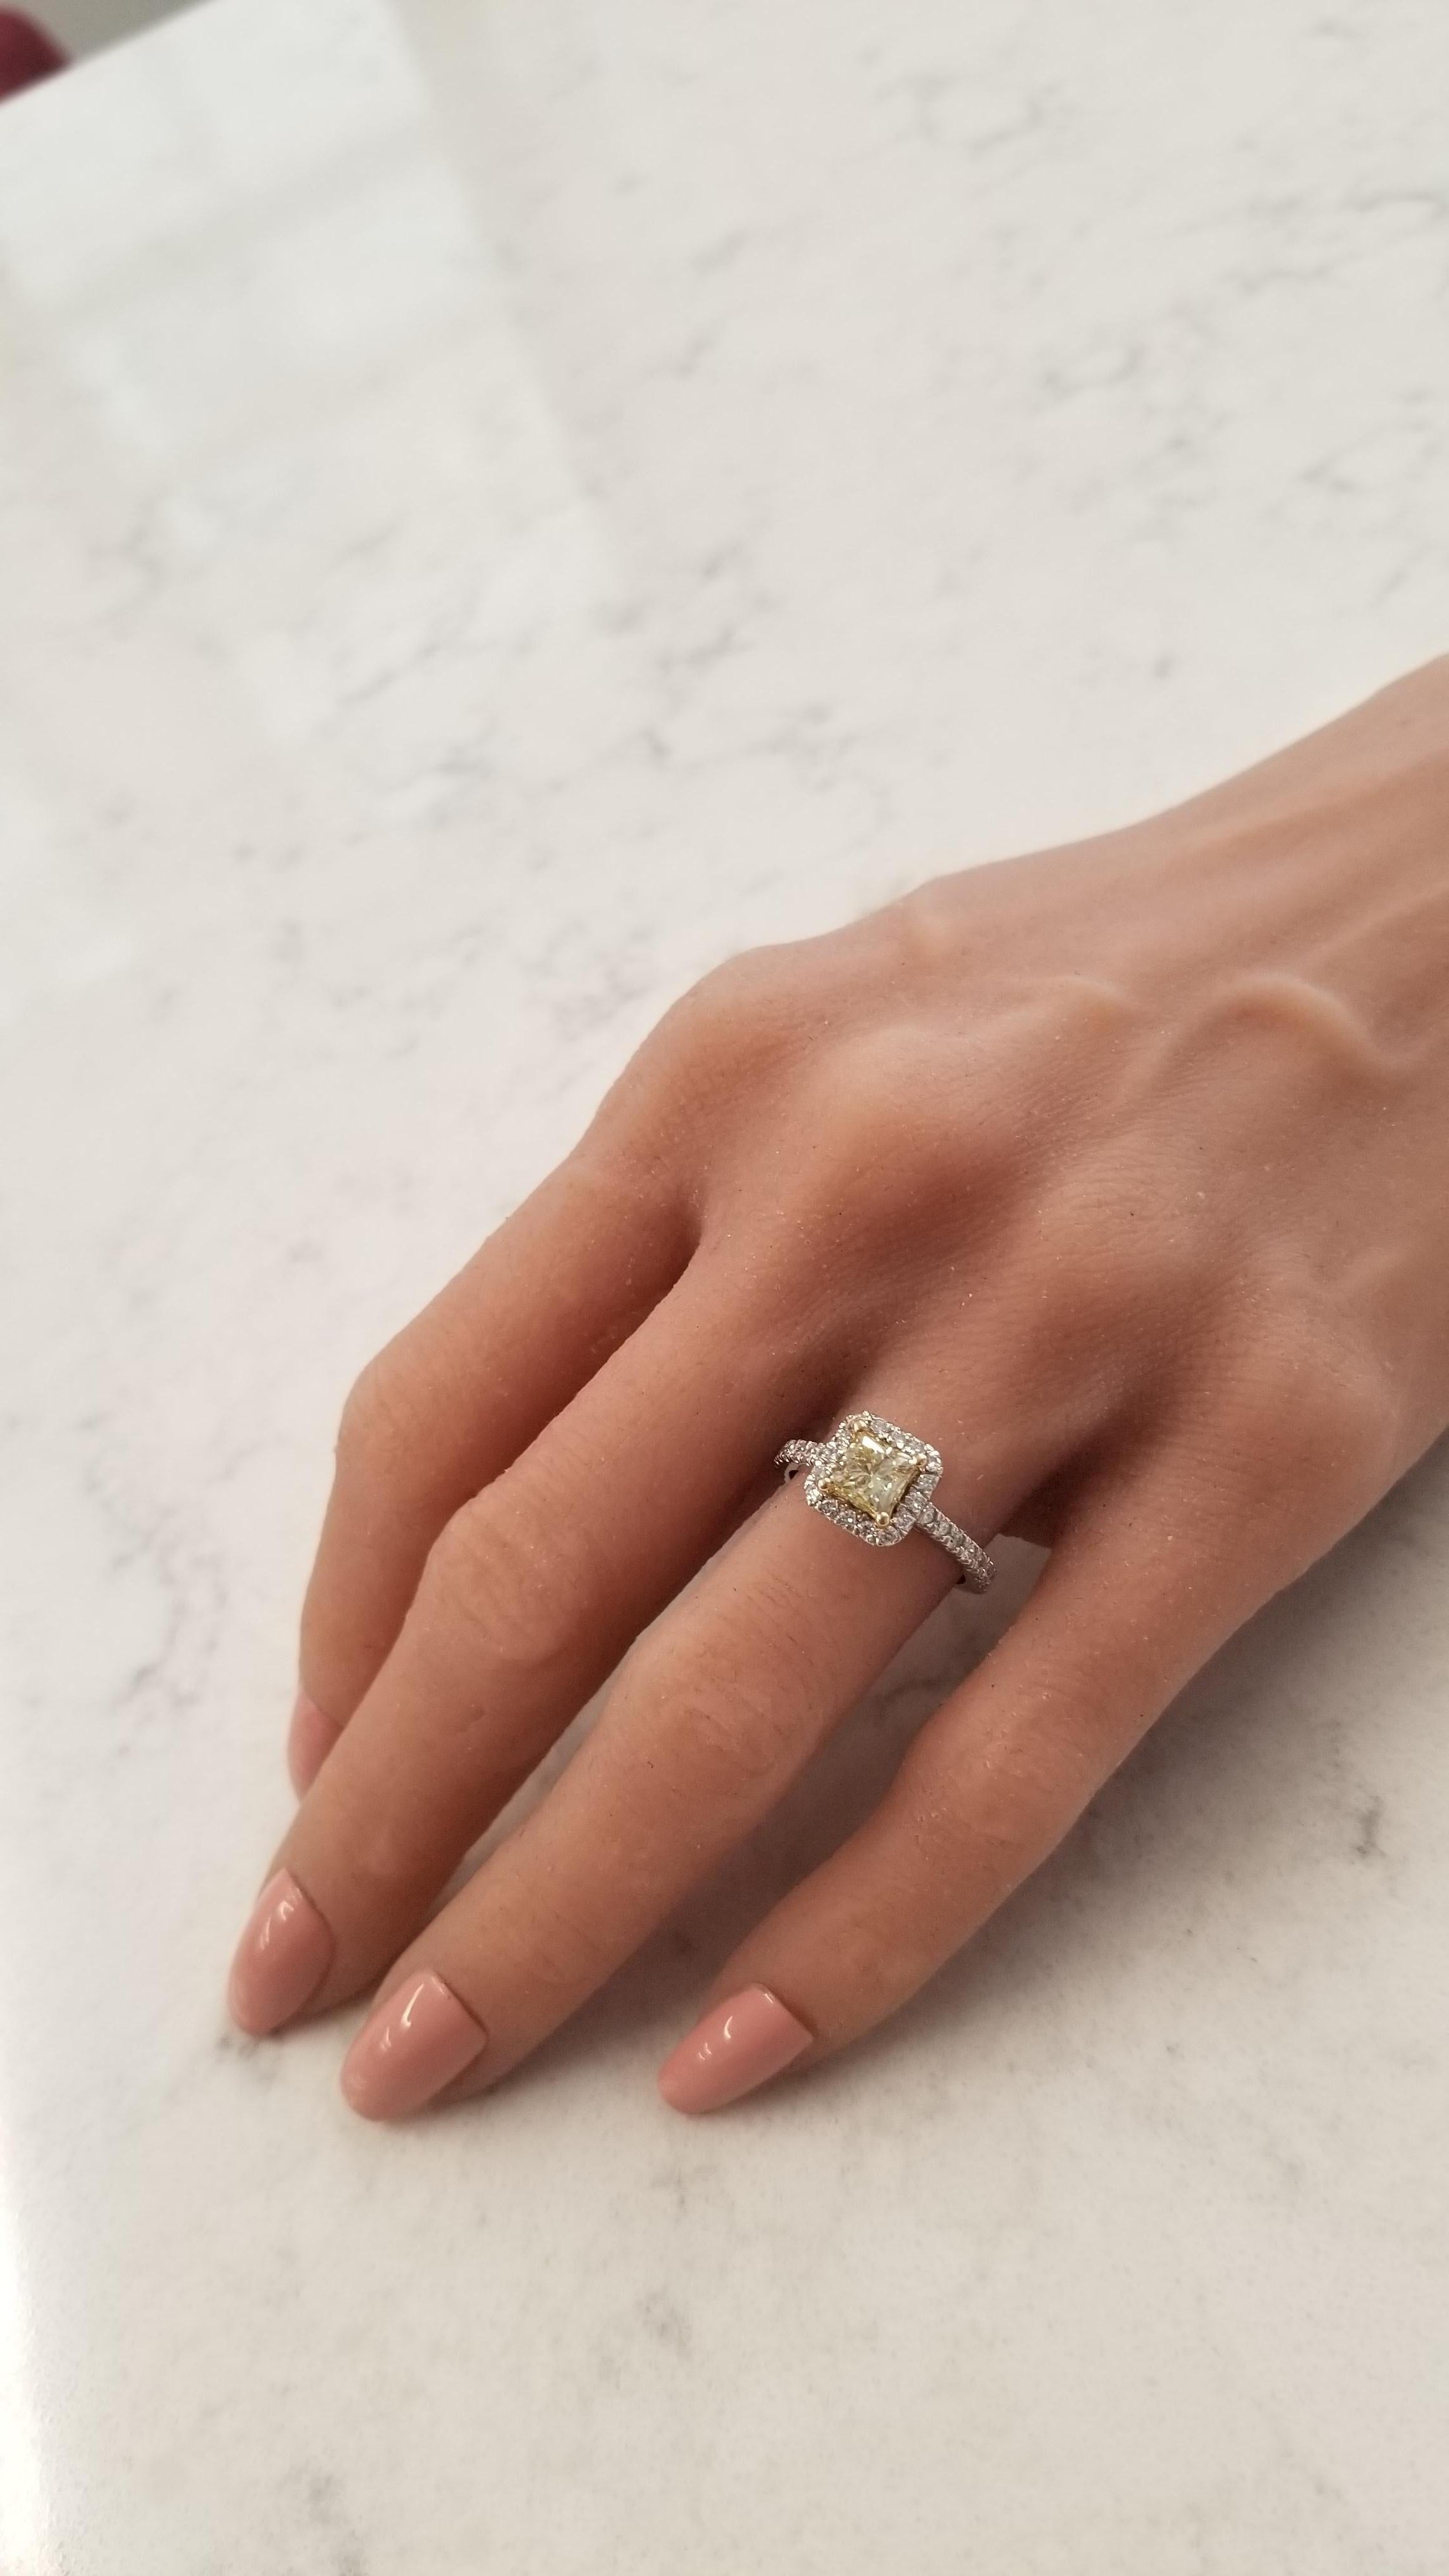 GIA zertifiziert 1::06 Karat Prinzessinnenschliff Fancy Yellow Diamond Cocktail Ring in 18K Damen